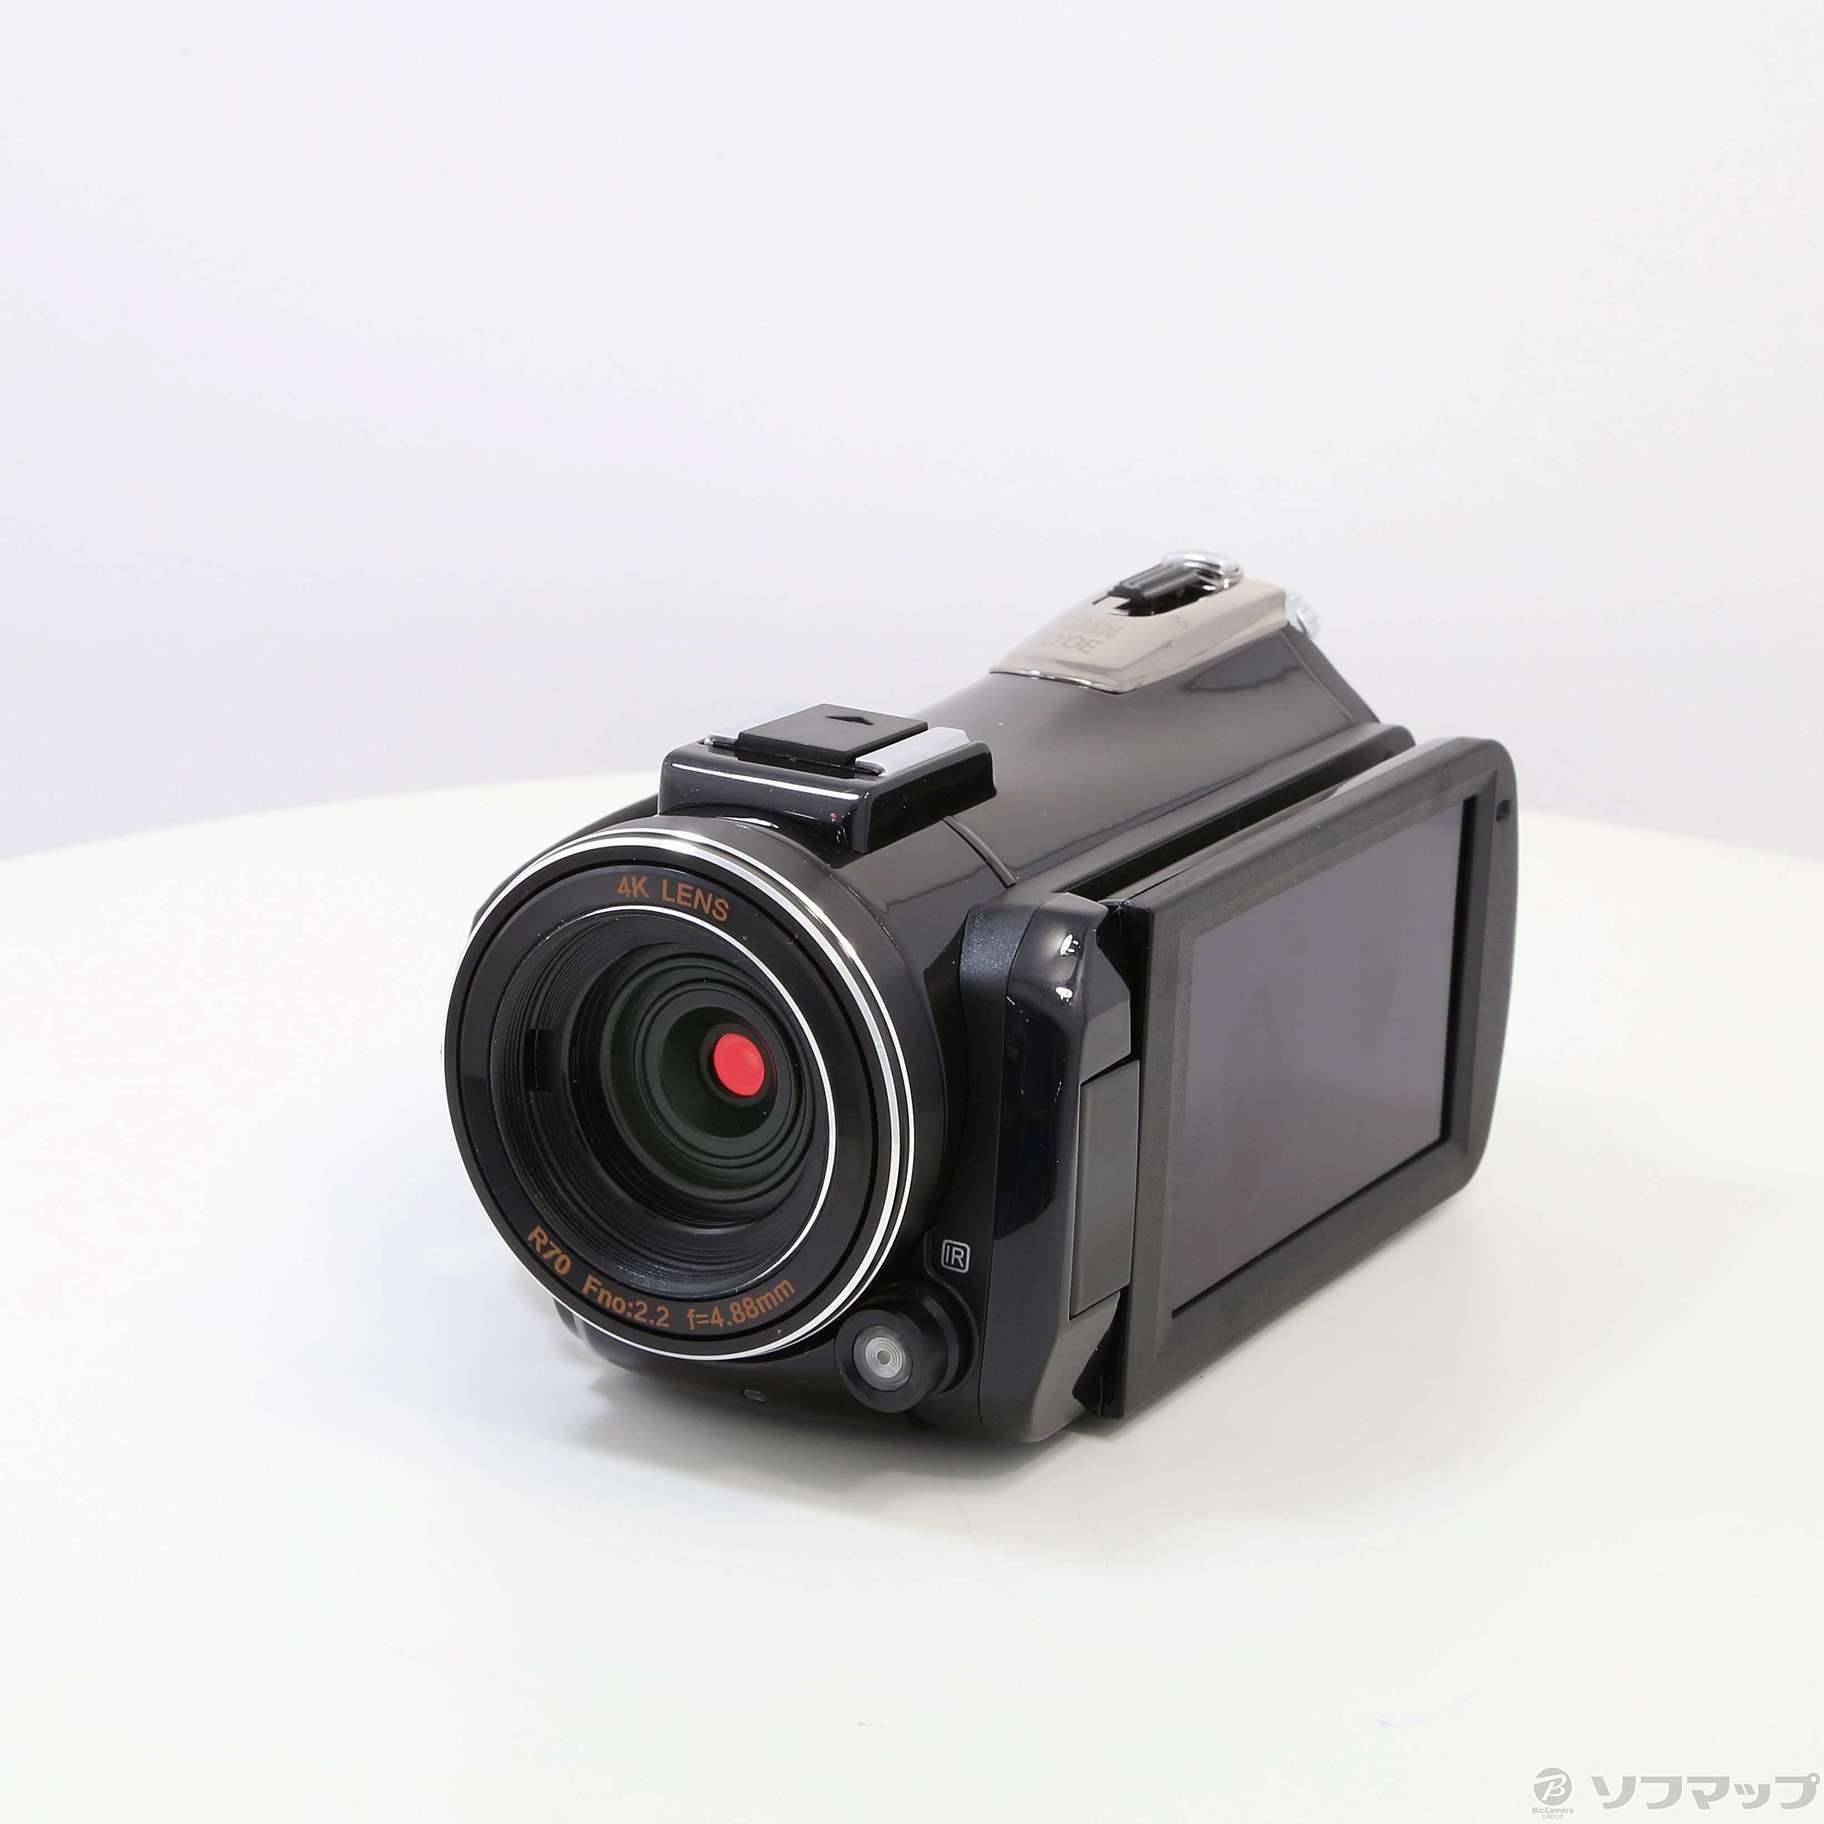 4Kビデオカメラ DV-AC3-2SONY製イメージセンサー搭載静止画 - ビデオカメラ